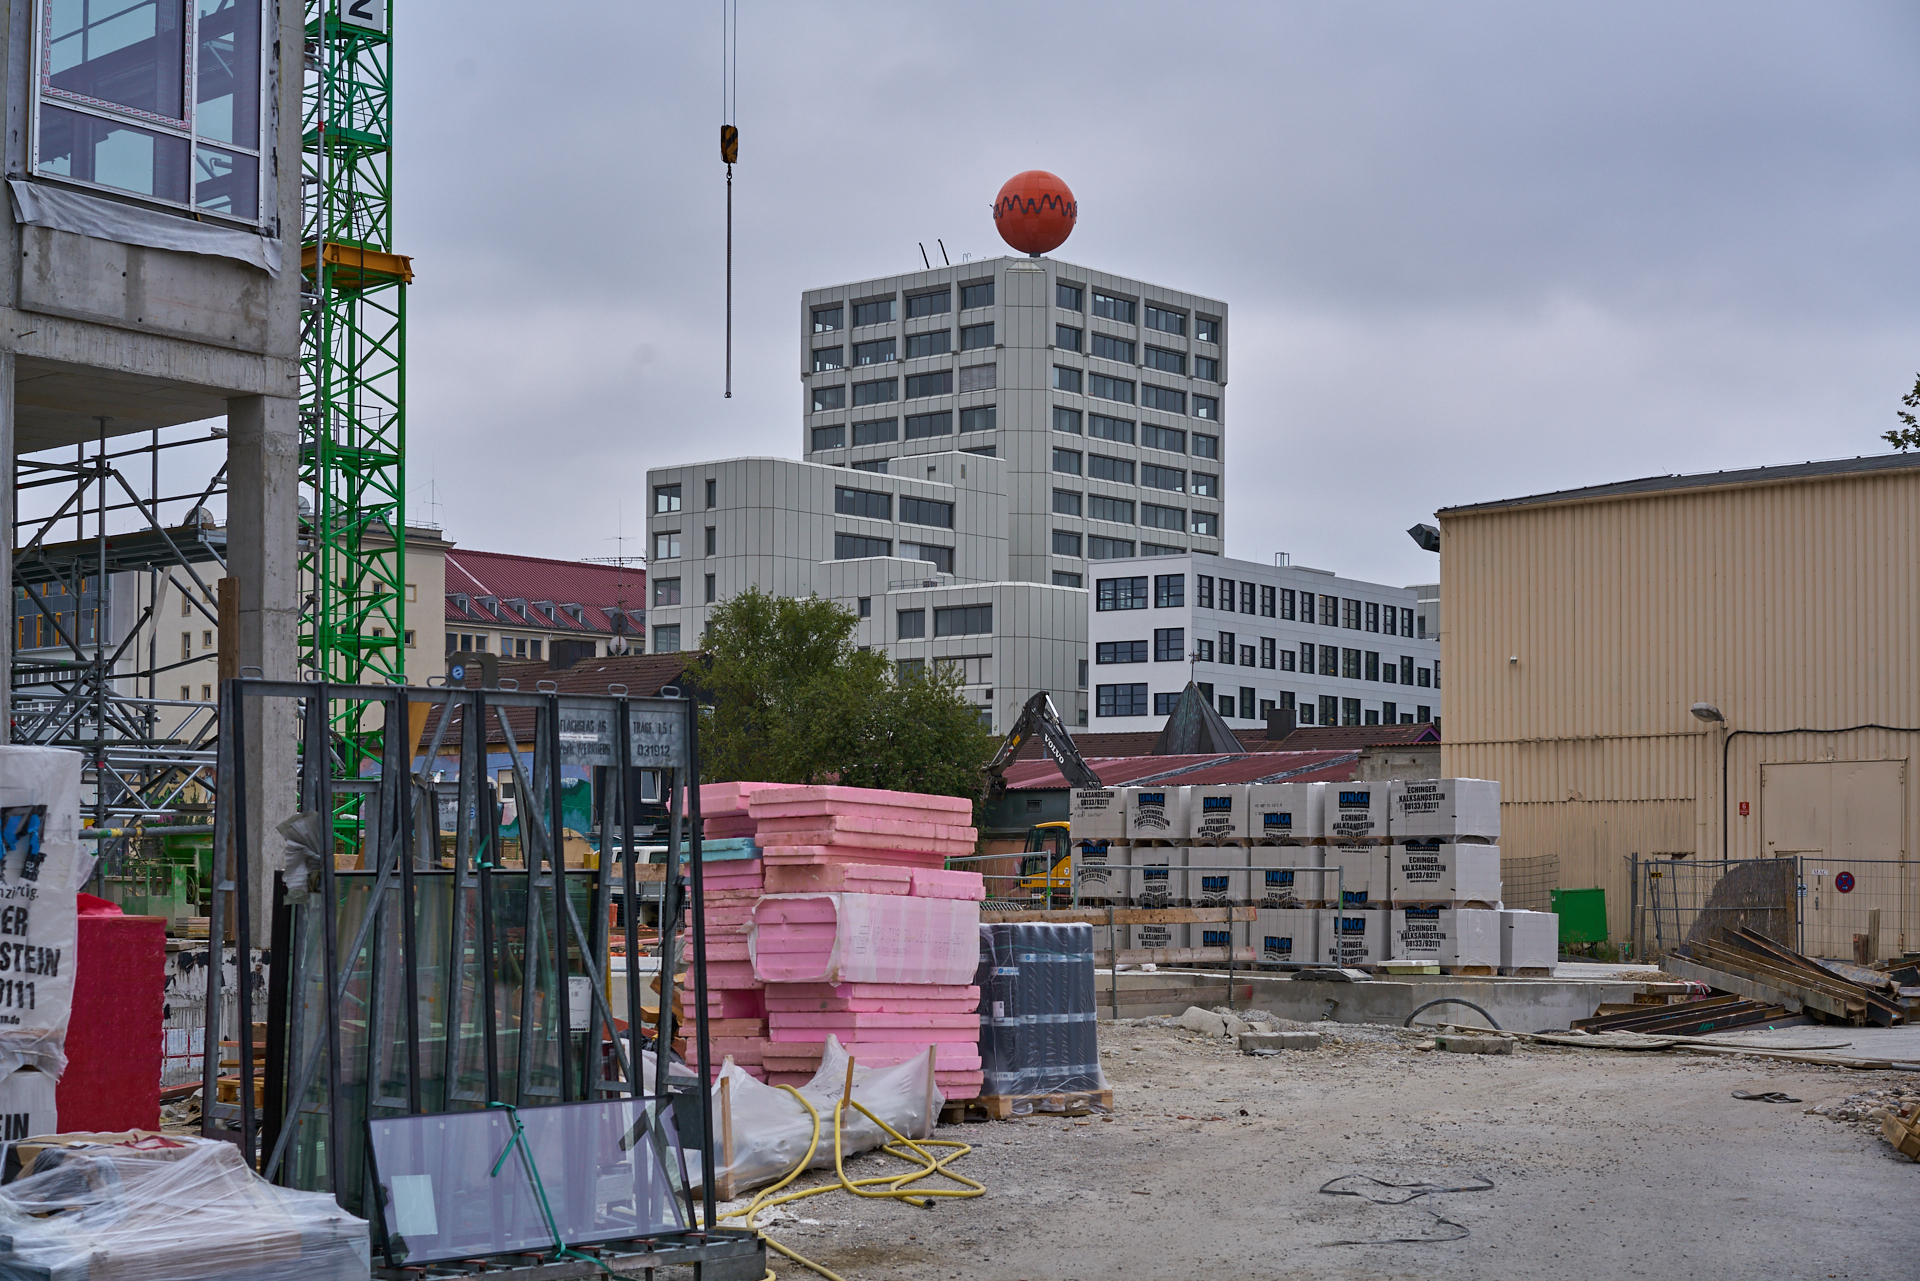 09.09.2015 - Das ATLAS-Gebäude hat noch seine alte Fassade. WERK 3 entsteht.